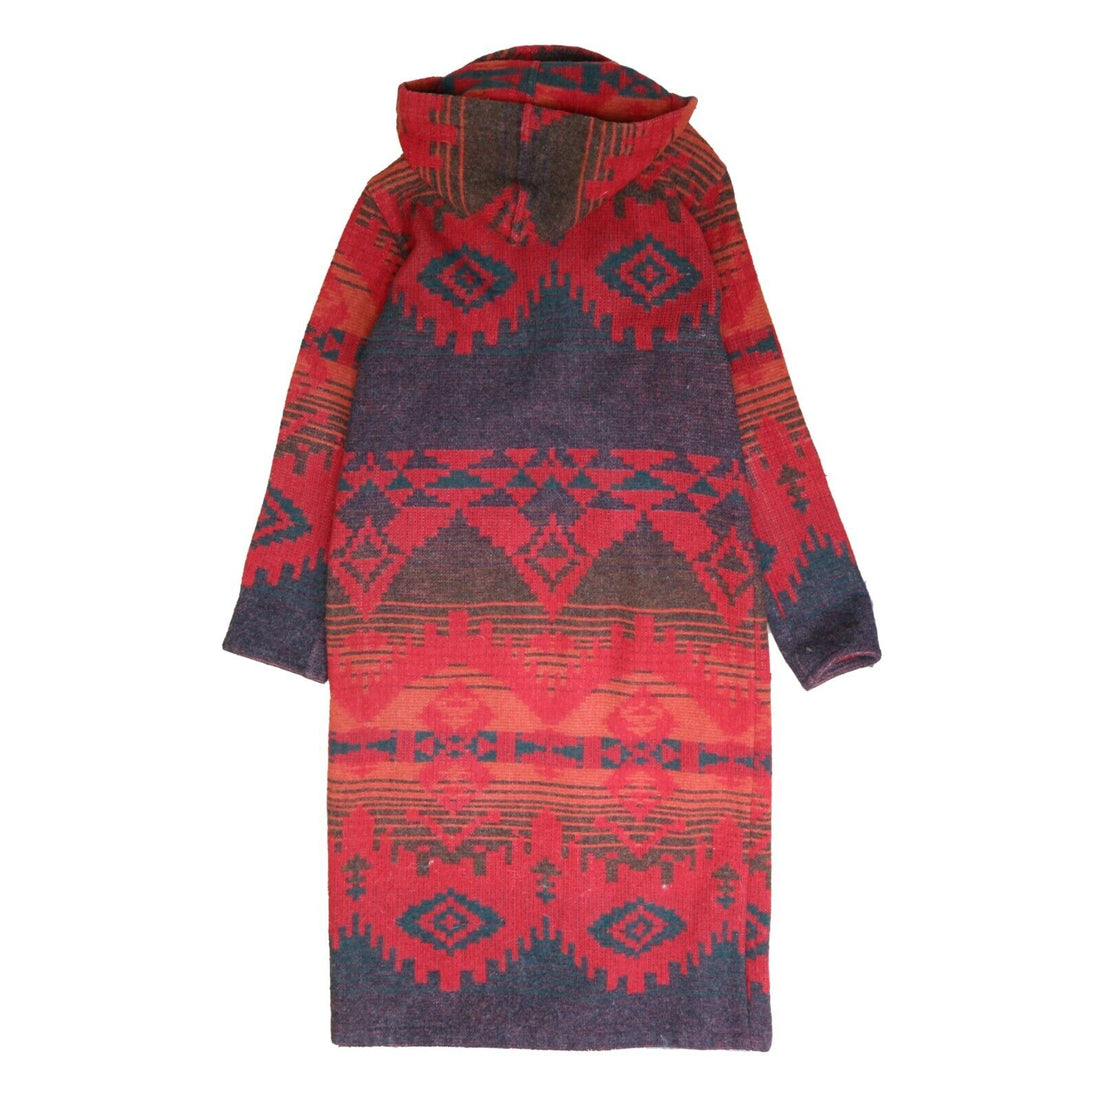 Vintage Woolrich Wool Coat Jacket Size Medium Western Navajo Aztec